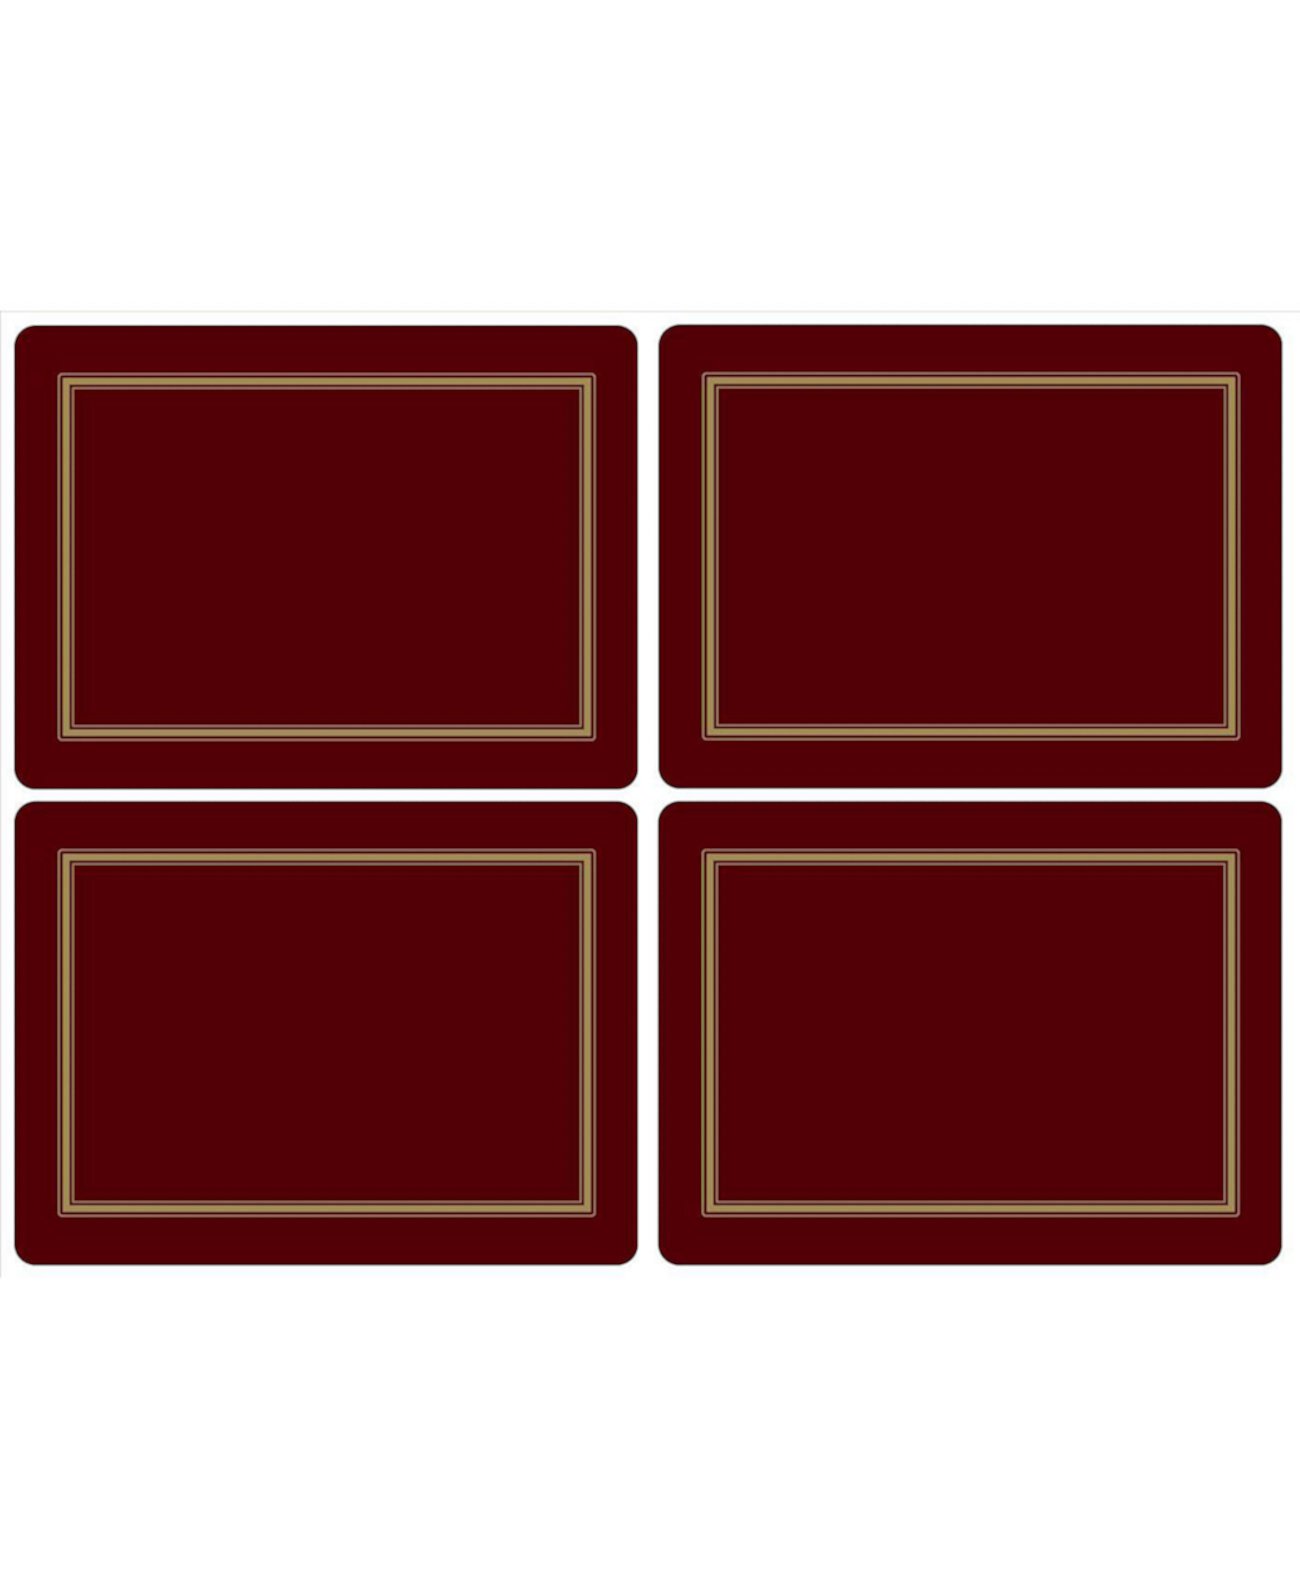 Классические бордовые салфетки, набор из 4 штук Pimpernel